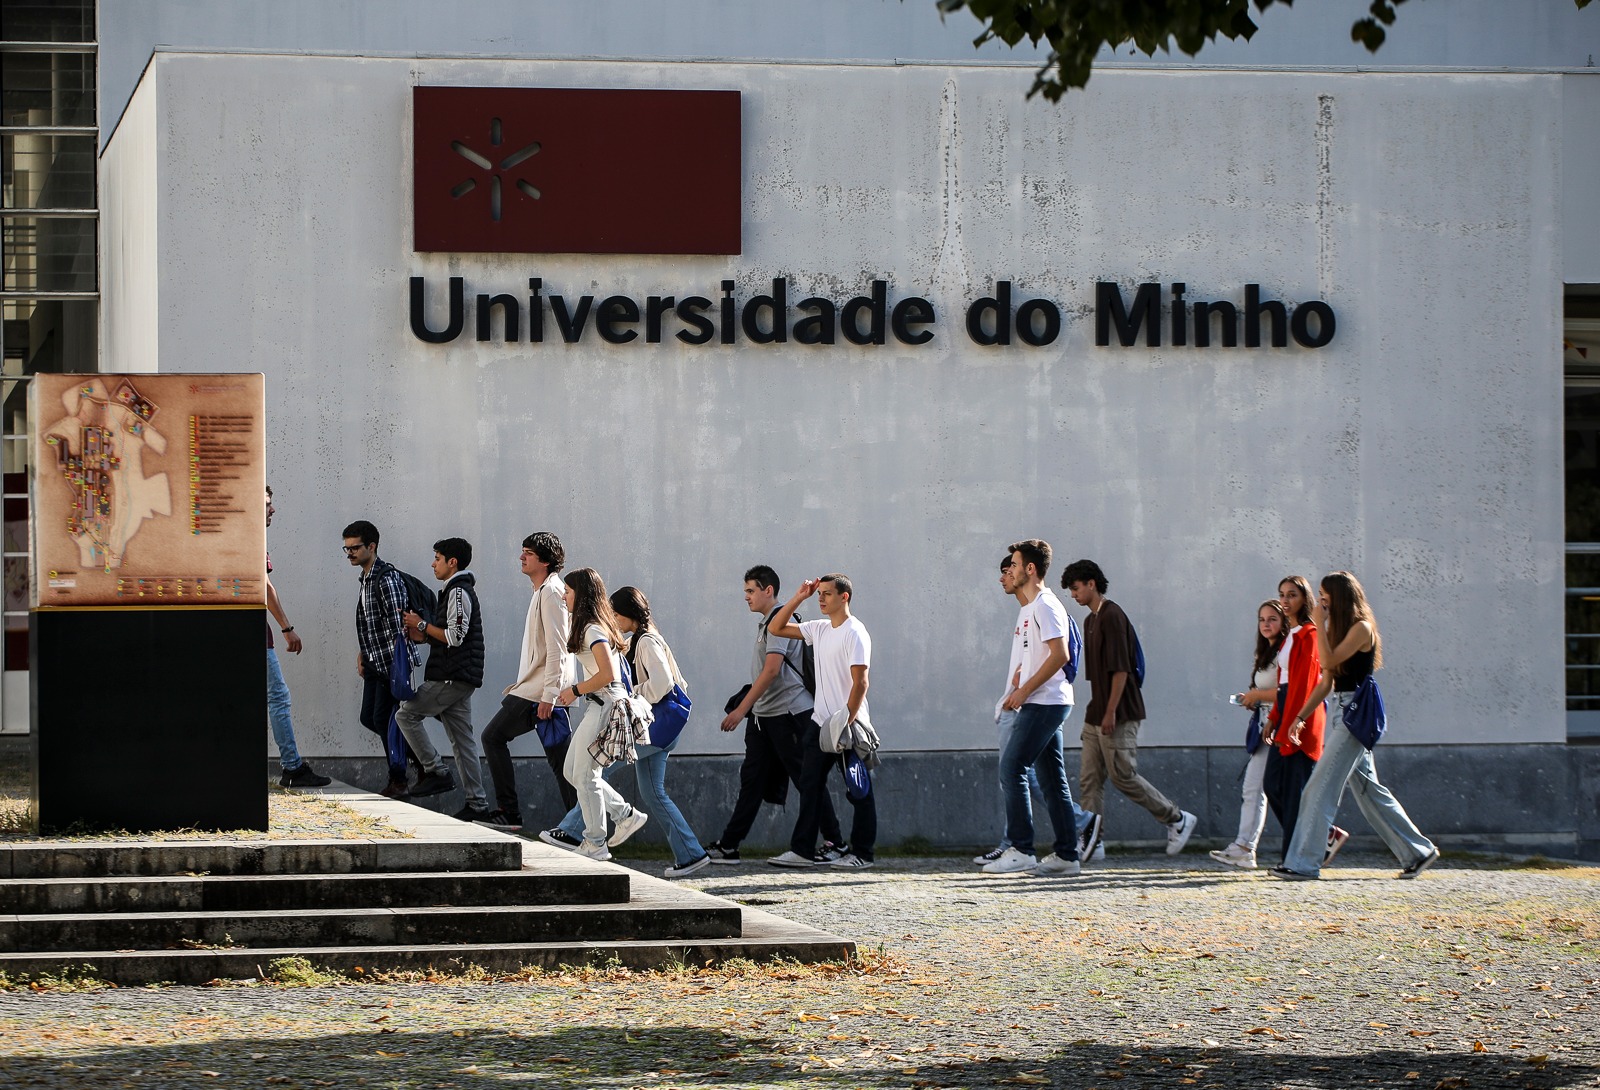 Campus de Azurém, Guimarães